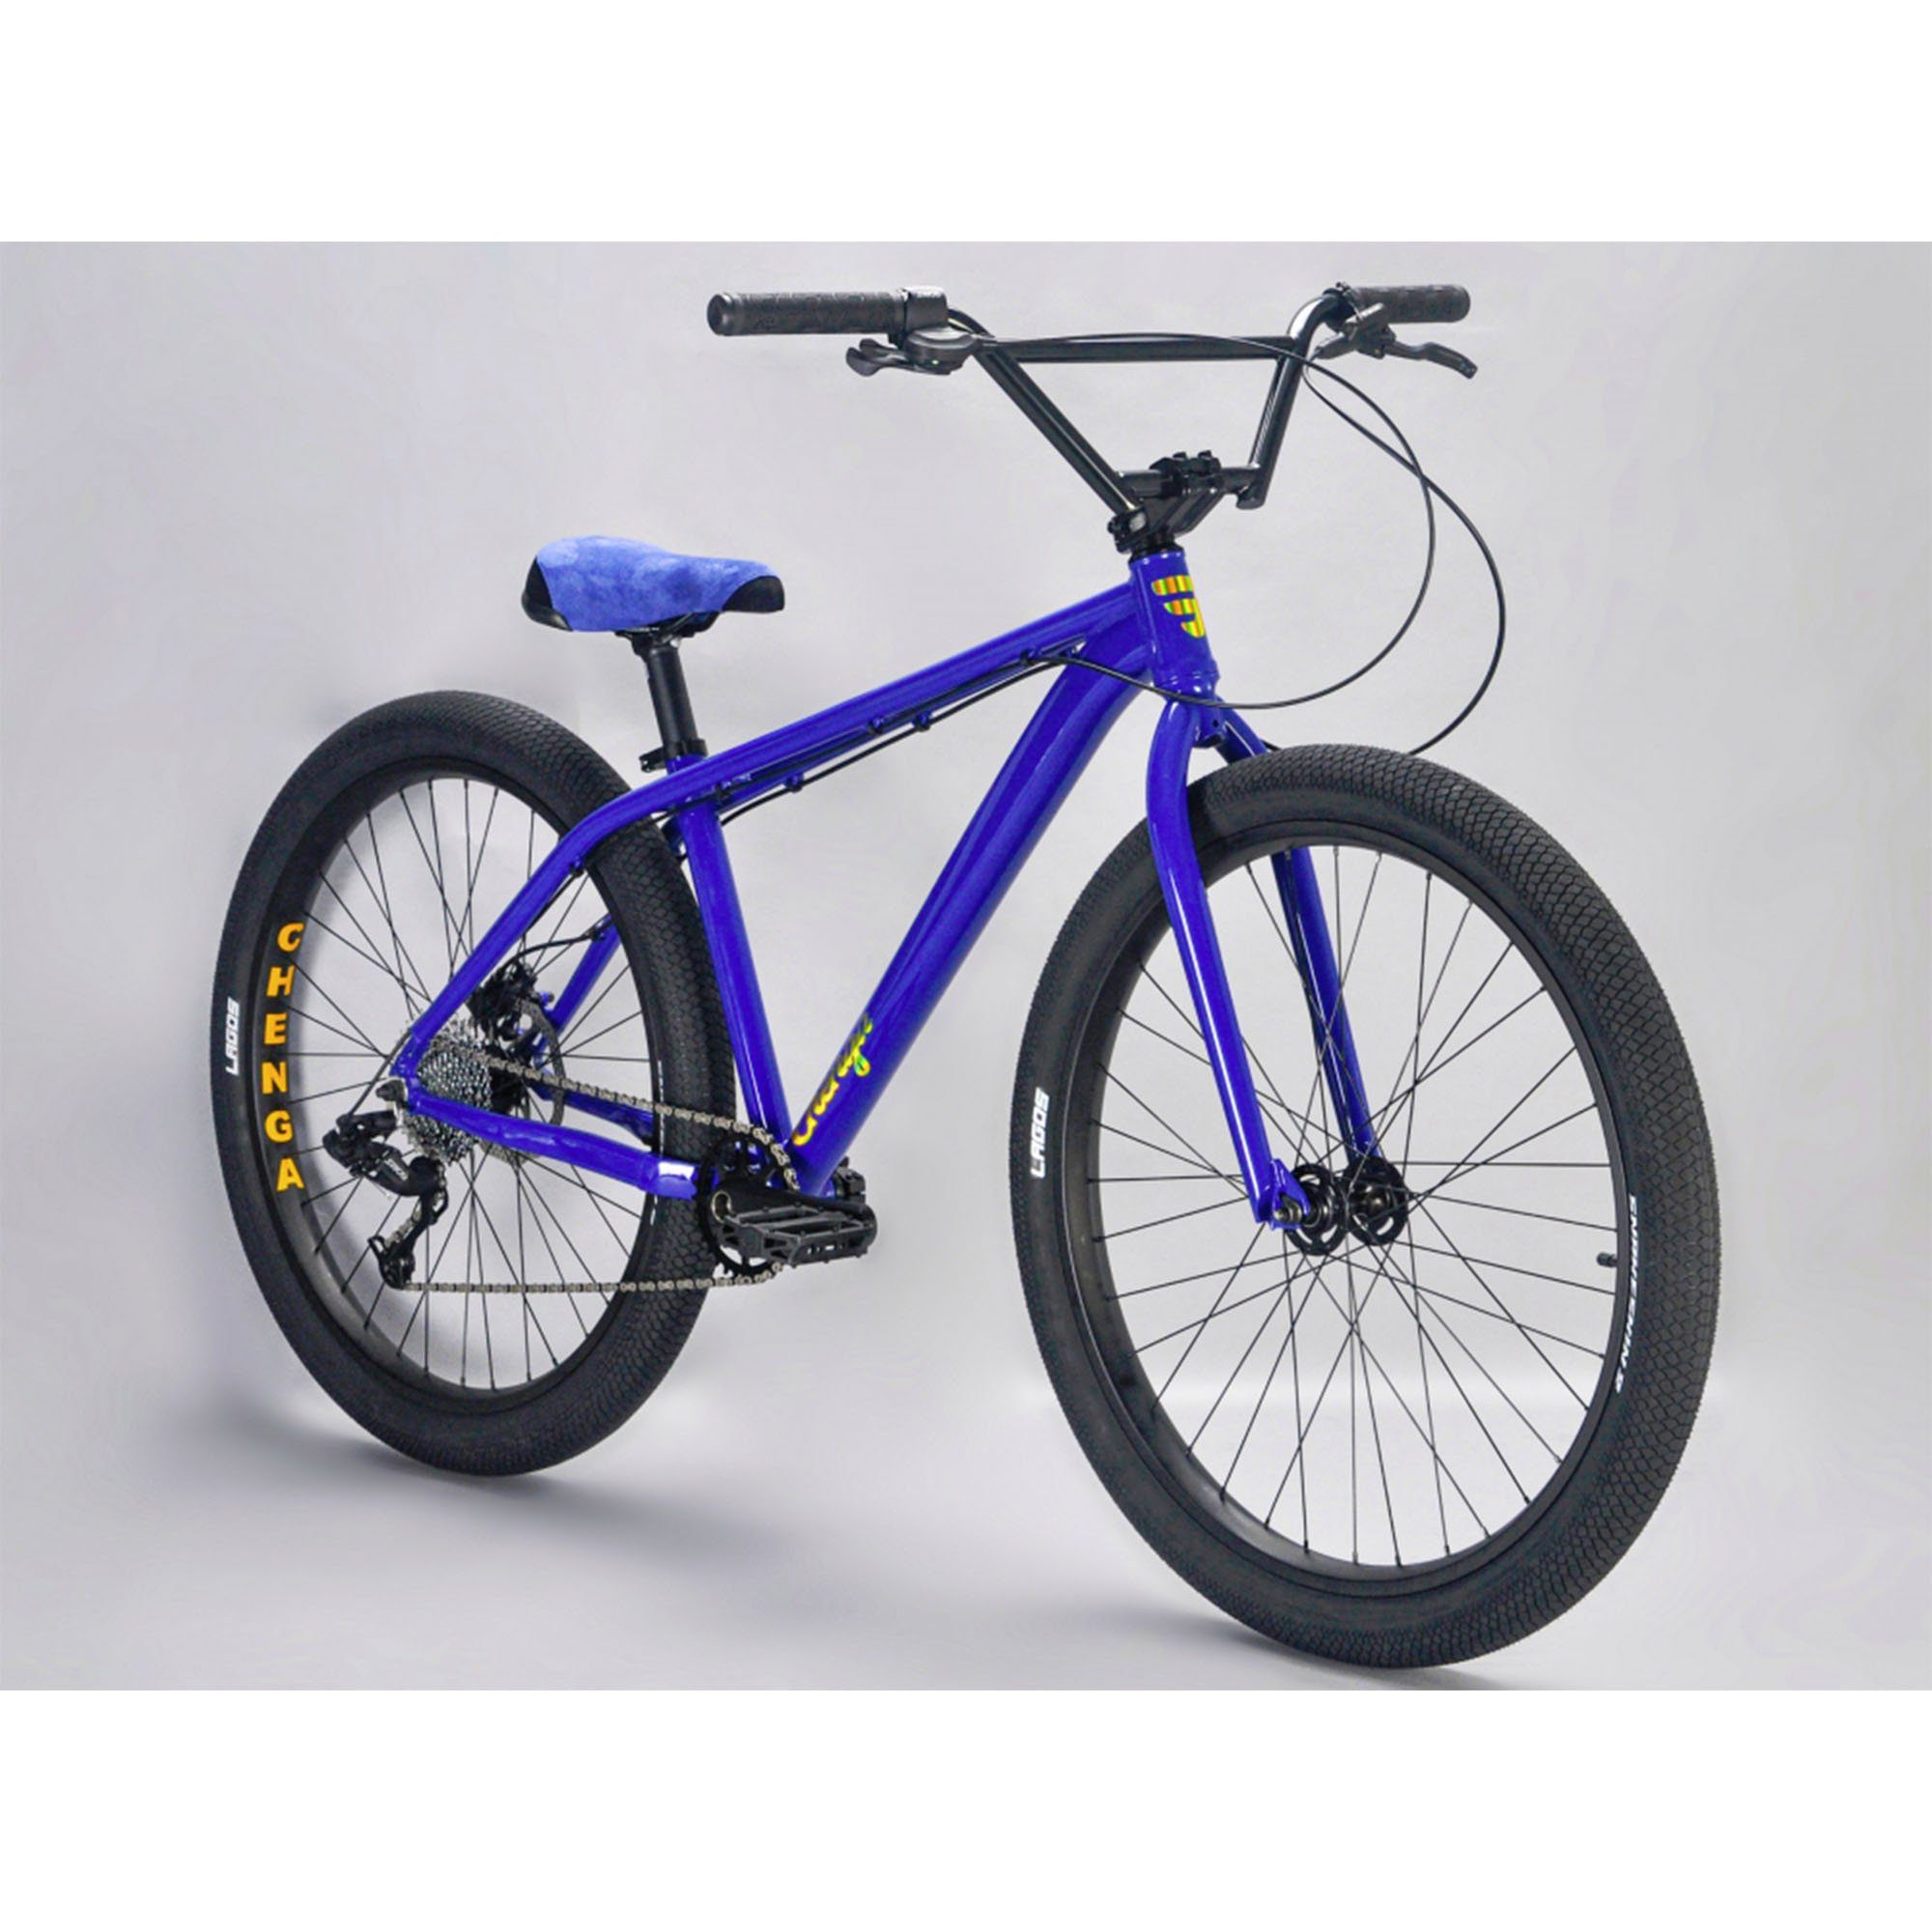 Mafiabikes Mountainbike Chenga, 1 Gang XLE Schaltwerk, ohne Schaltung, Wheelie Bike ab 155 cm für Jugendliche und Erwachsene Stunt Bike retro blue